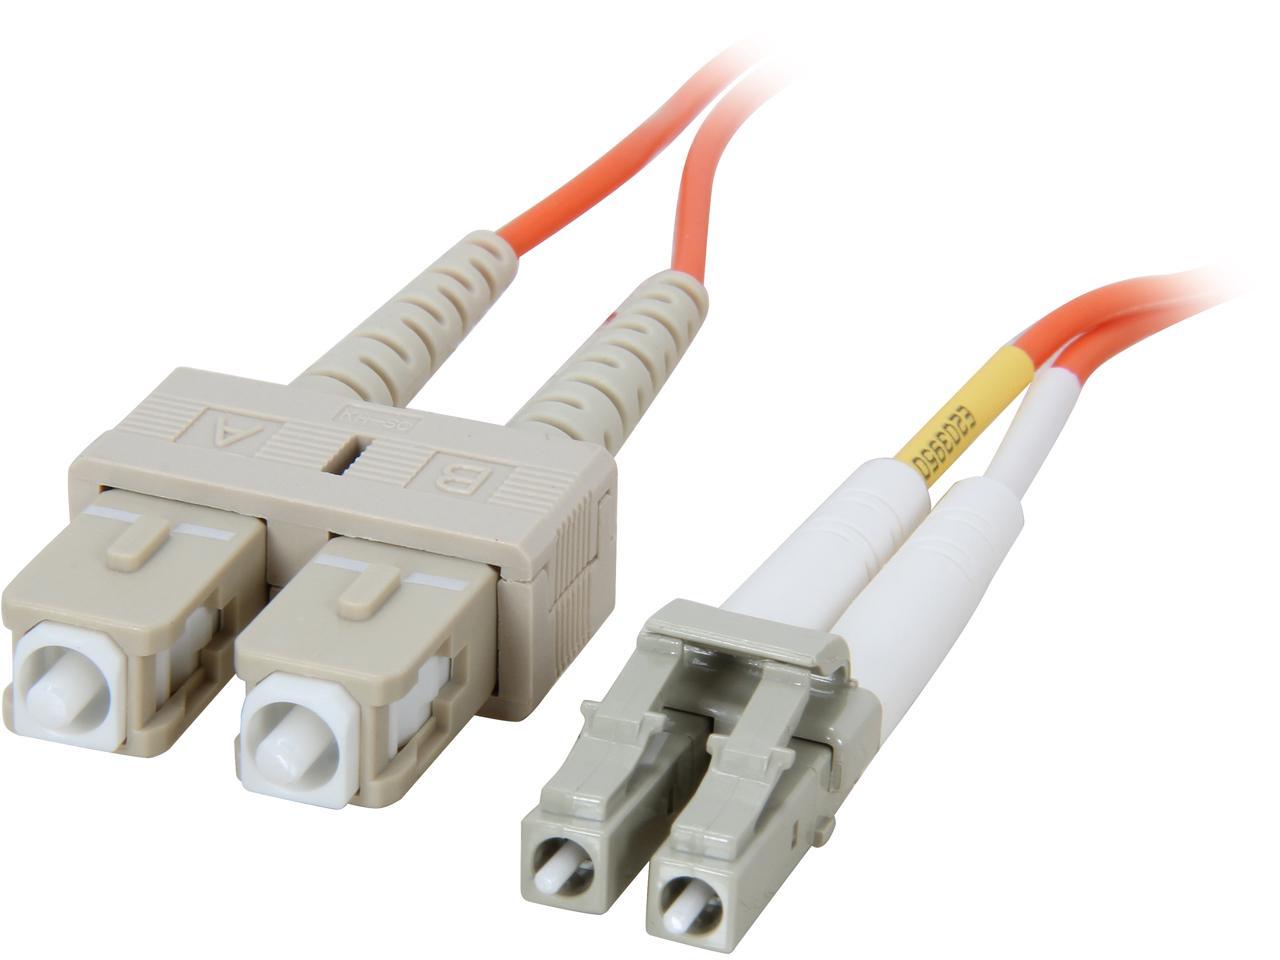 3.3 Feet, 1 Meter C2G 33154 OM1 Fiber Optic Cable LC-SC 62.5/125 Duplex Multimode PVC Fiber Cable Orange 